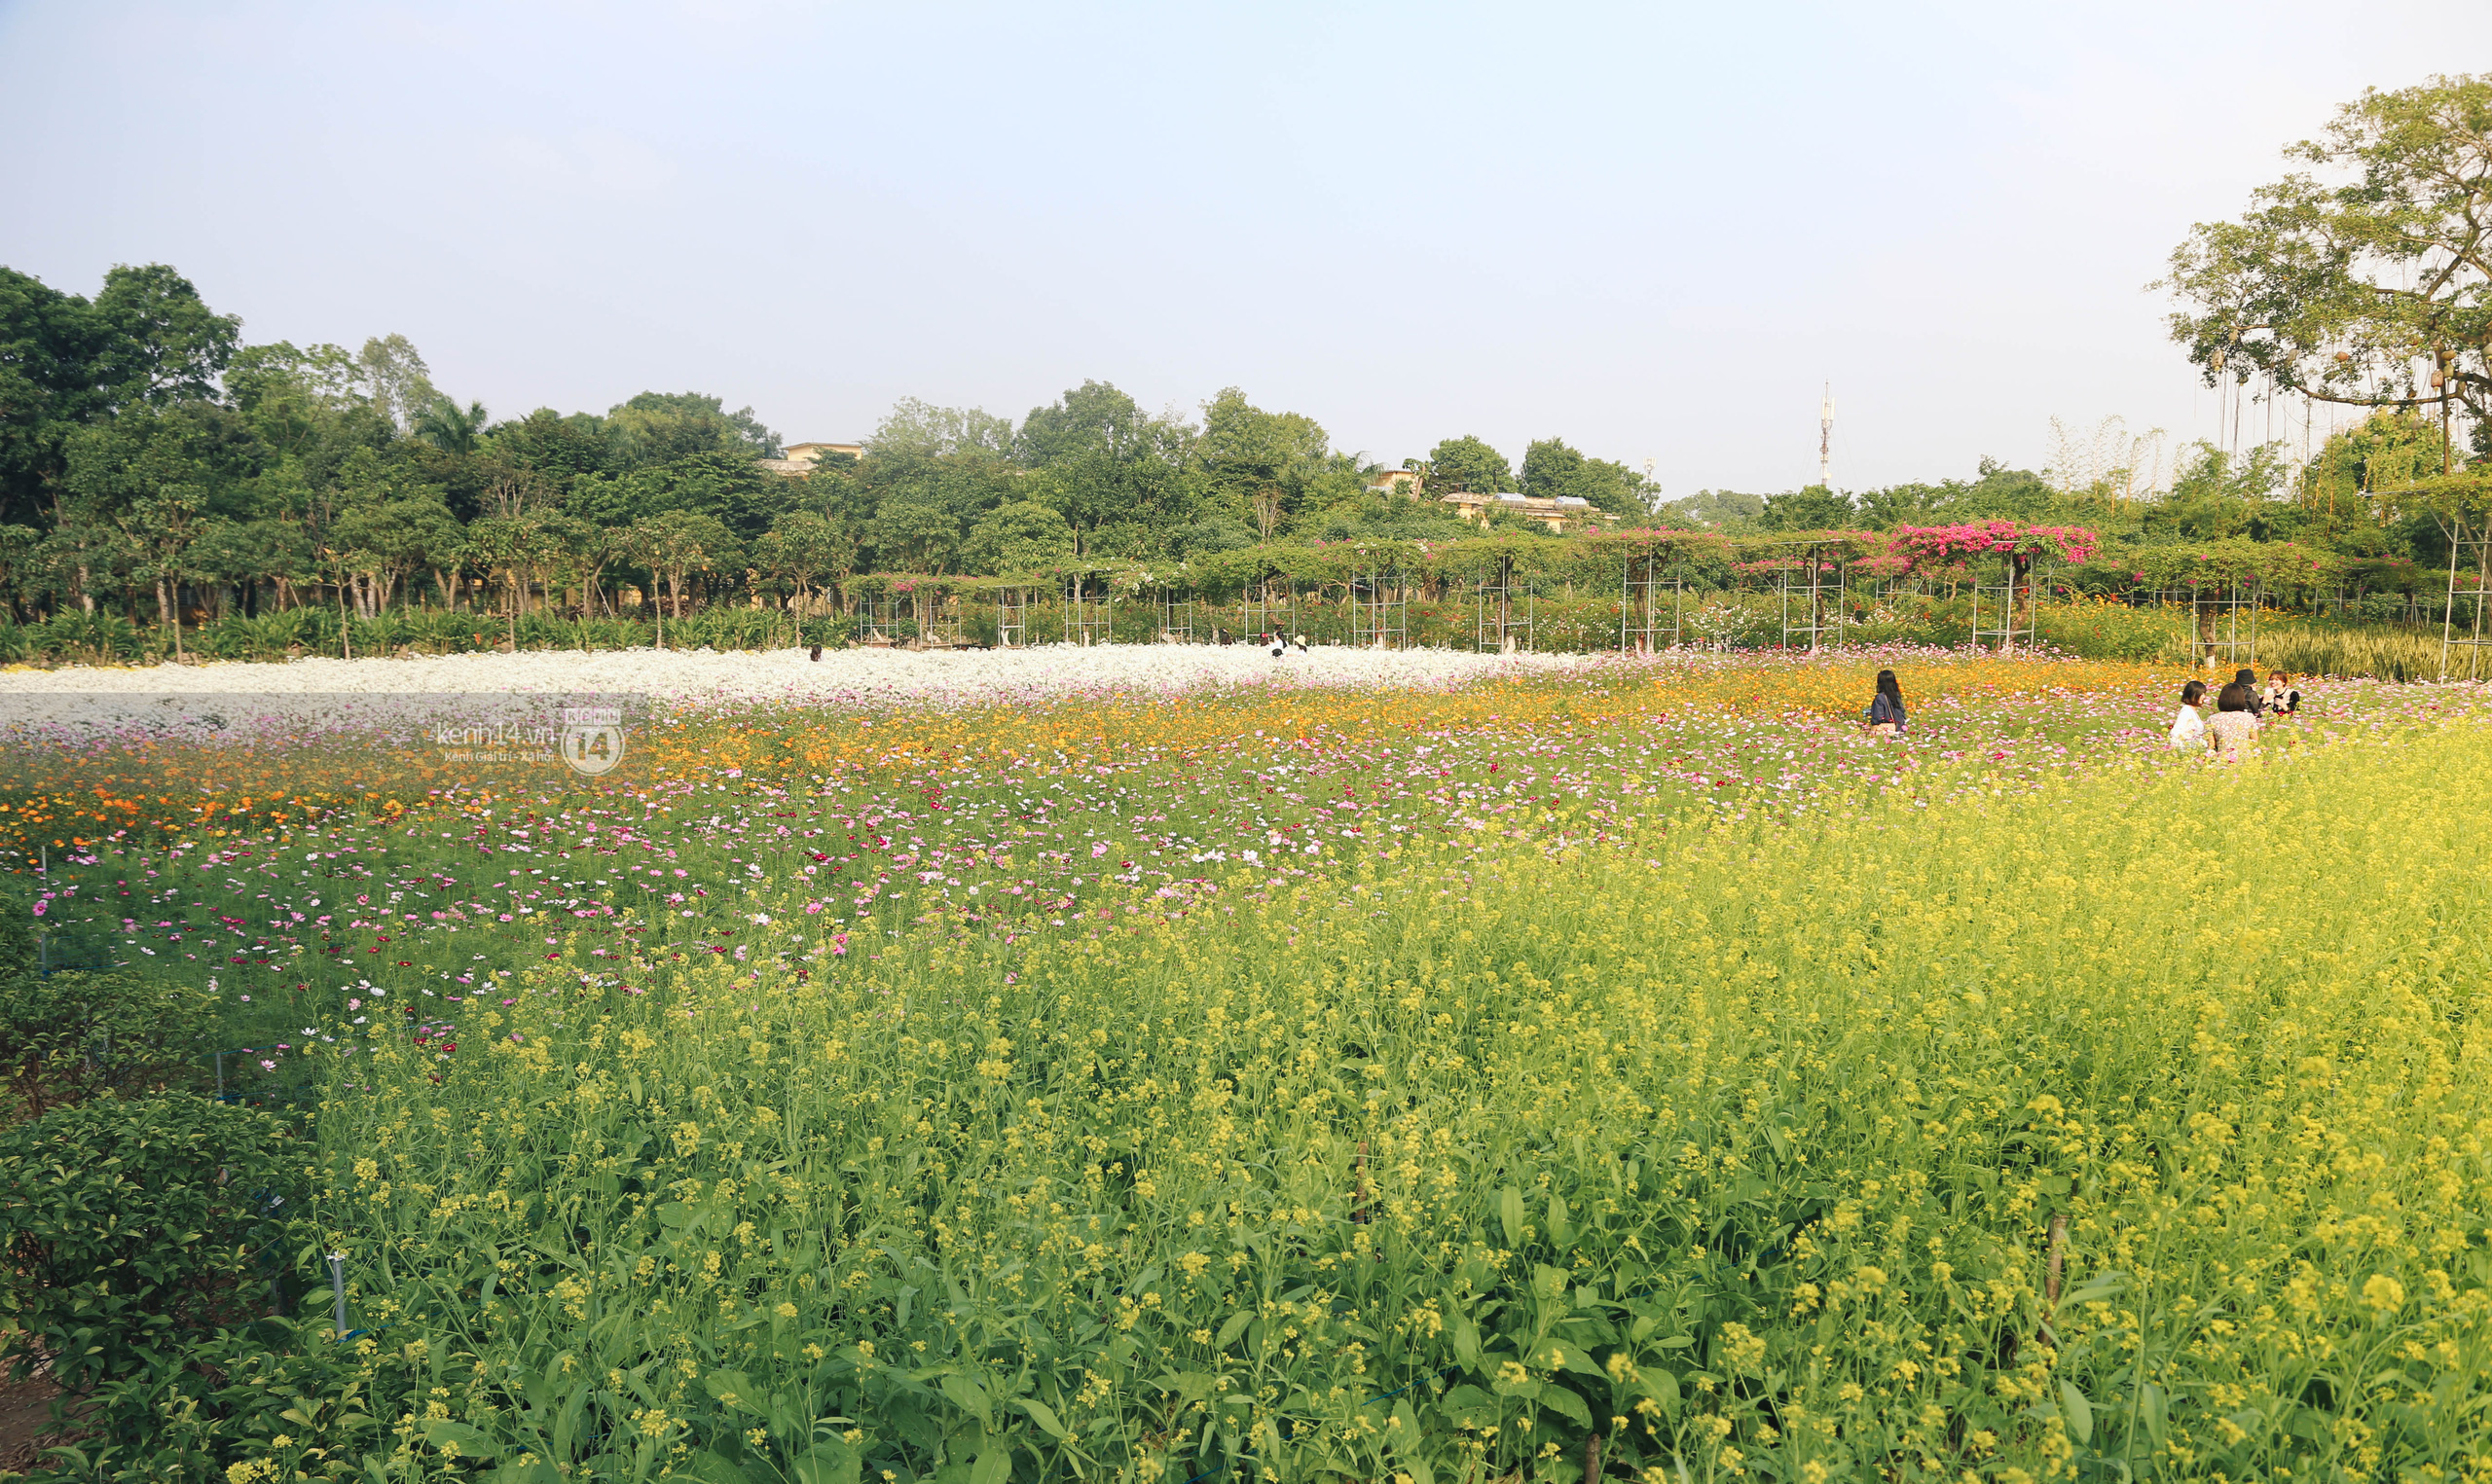 Trường ĐH rộng gần 200ha có vườn hoa đẹp nhất mùa đông Hà Nội, nhiều góc sống ảo cực chill chỉ với 25K - Ảnh 8.